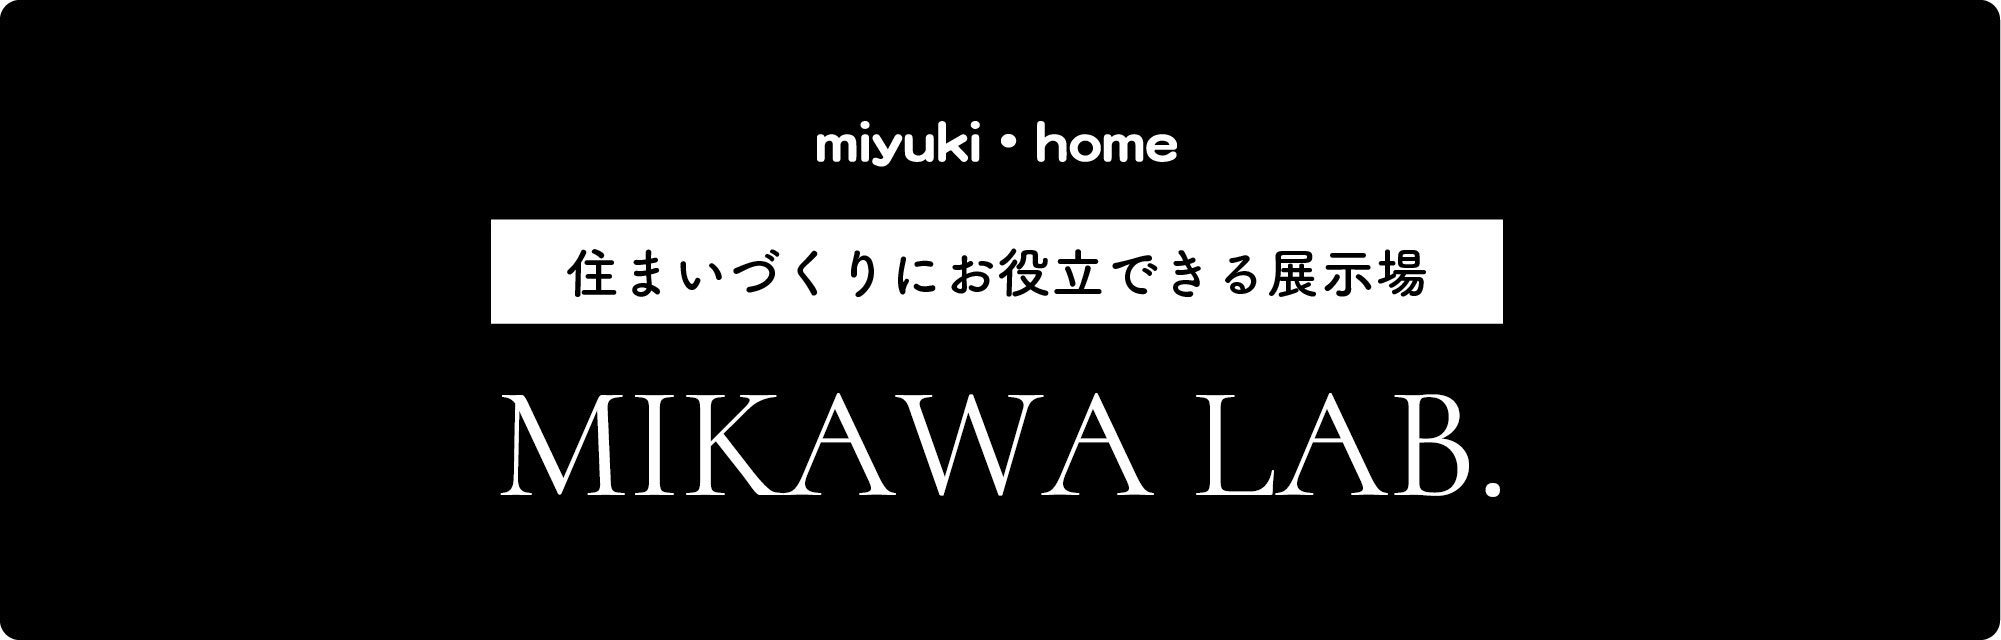 MIKAWA LAB. OPEN!